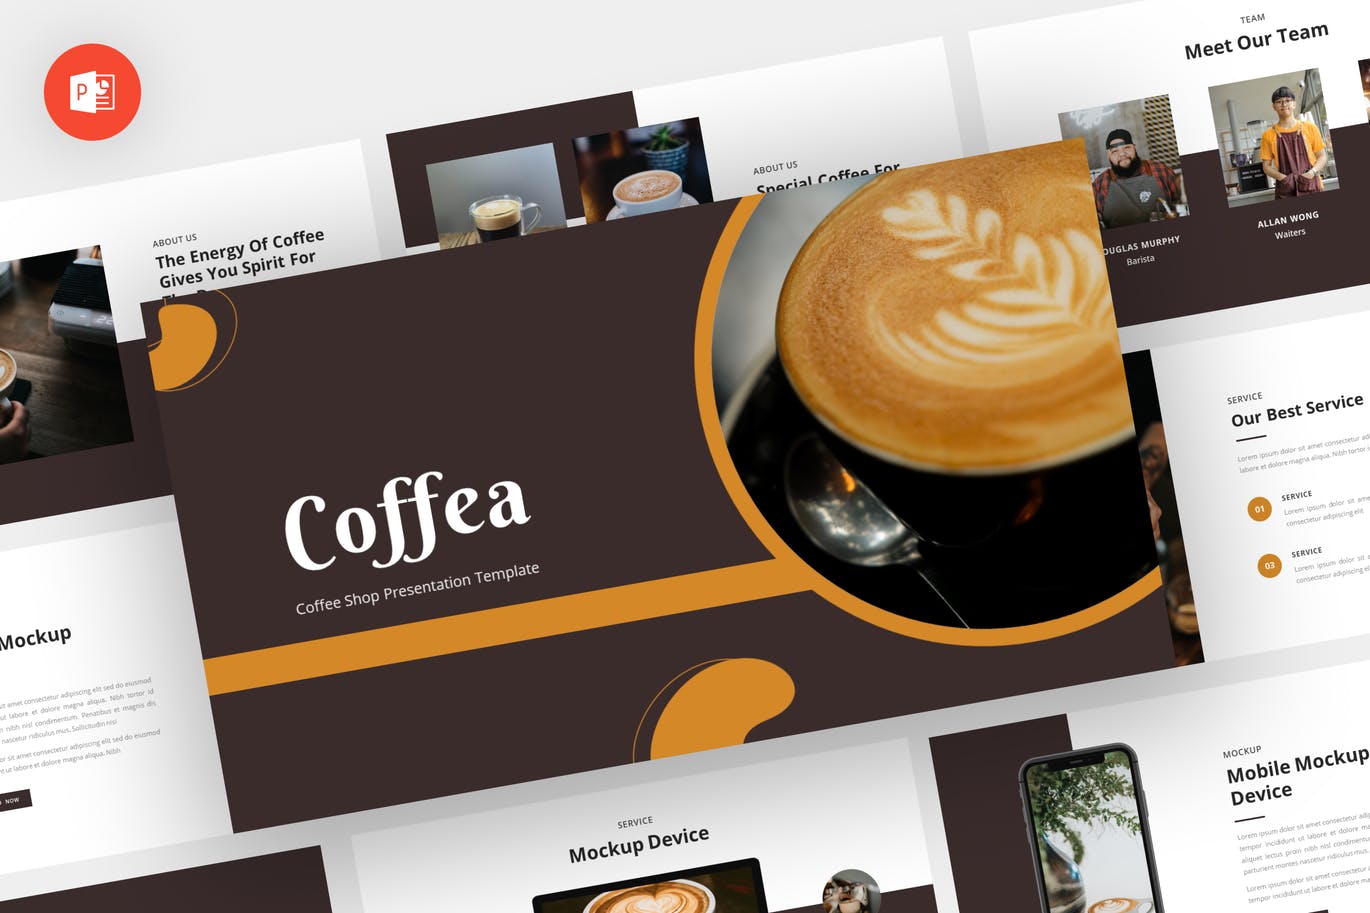 咖啡店产品介绍PPT创意模板 Coffea – Coffee Shop Powerpoint Template 幻灯图表 第1张